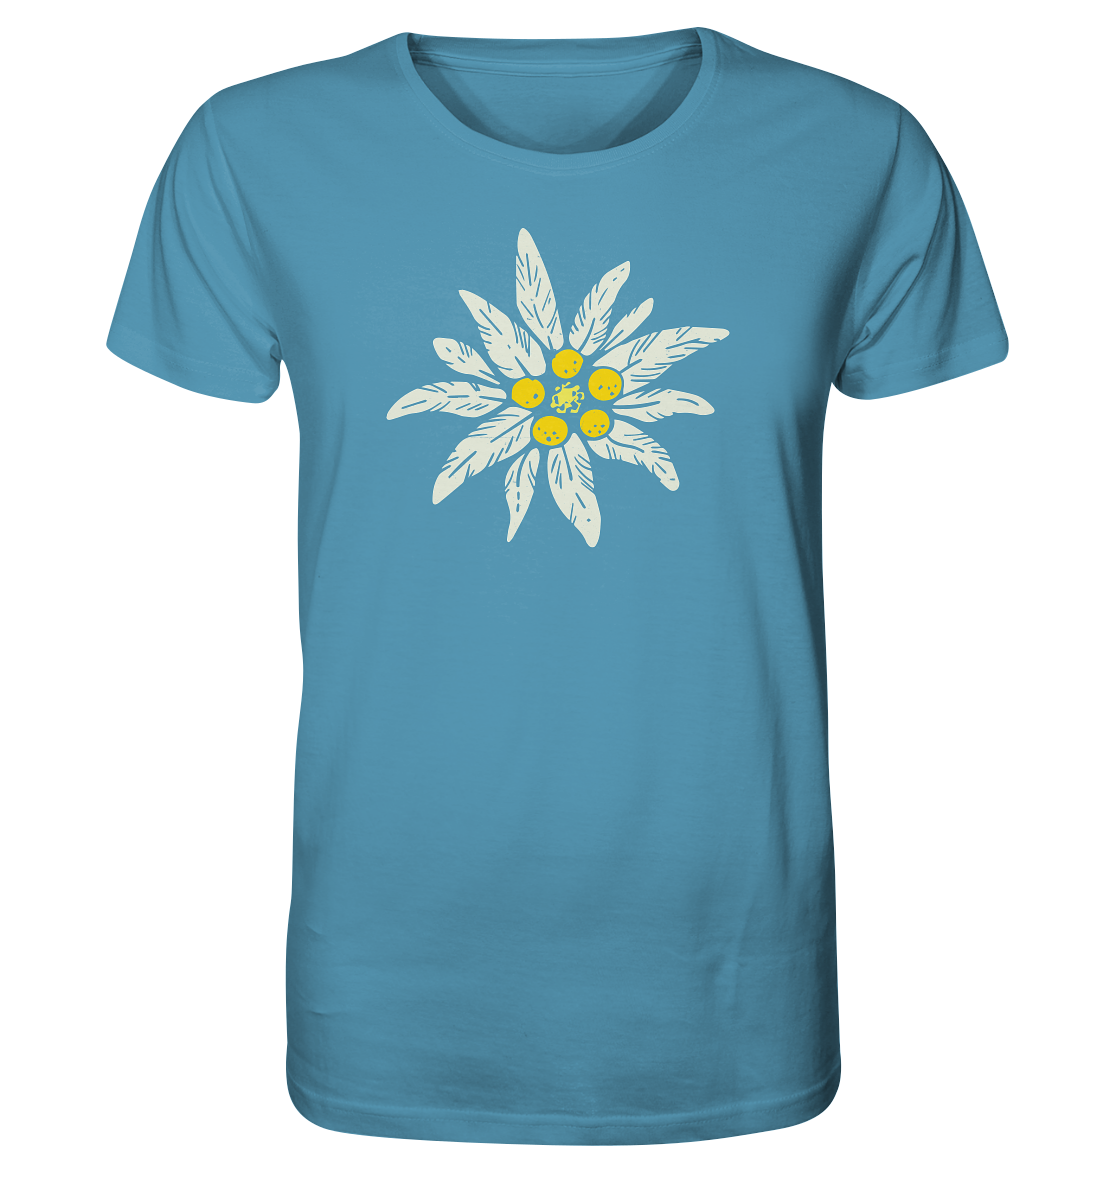 Stella alpina - Organic Shirt